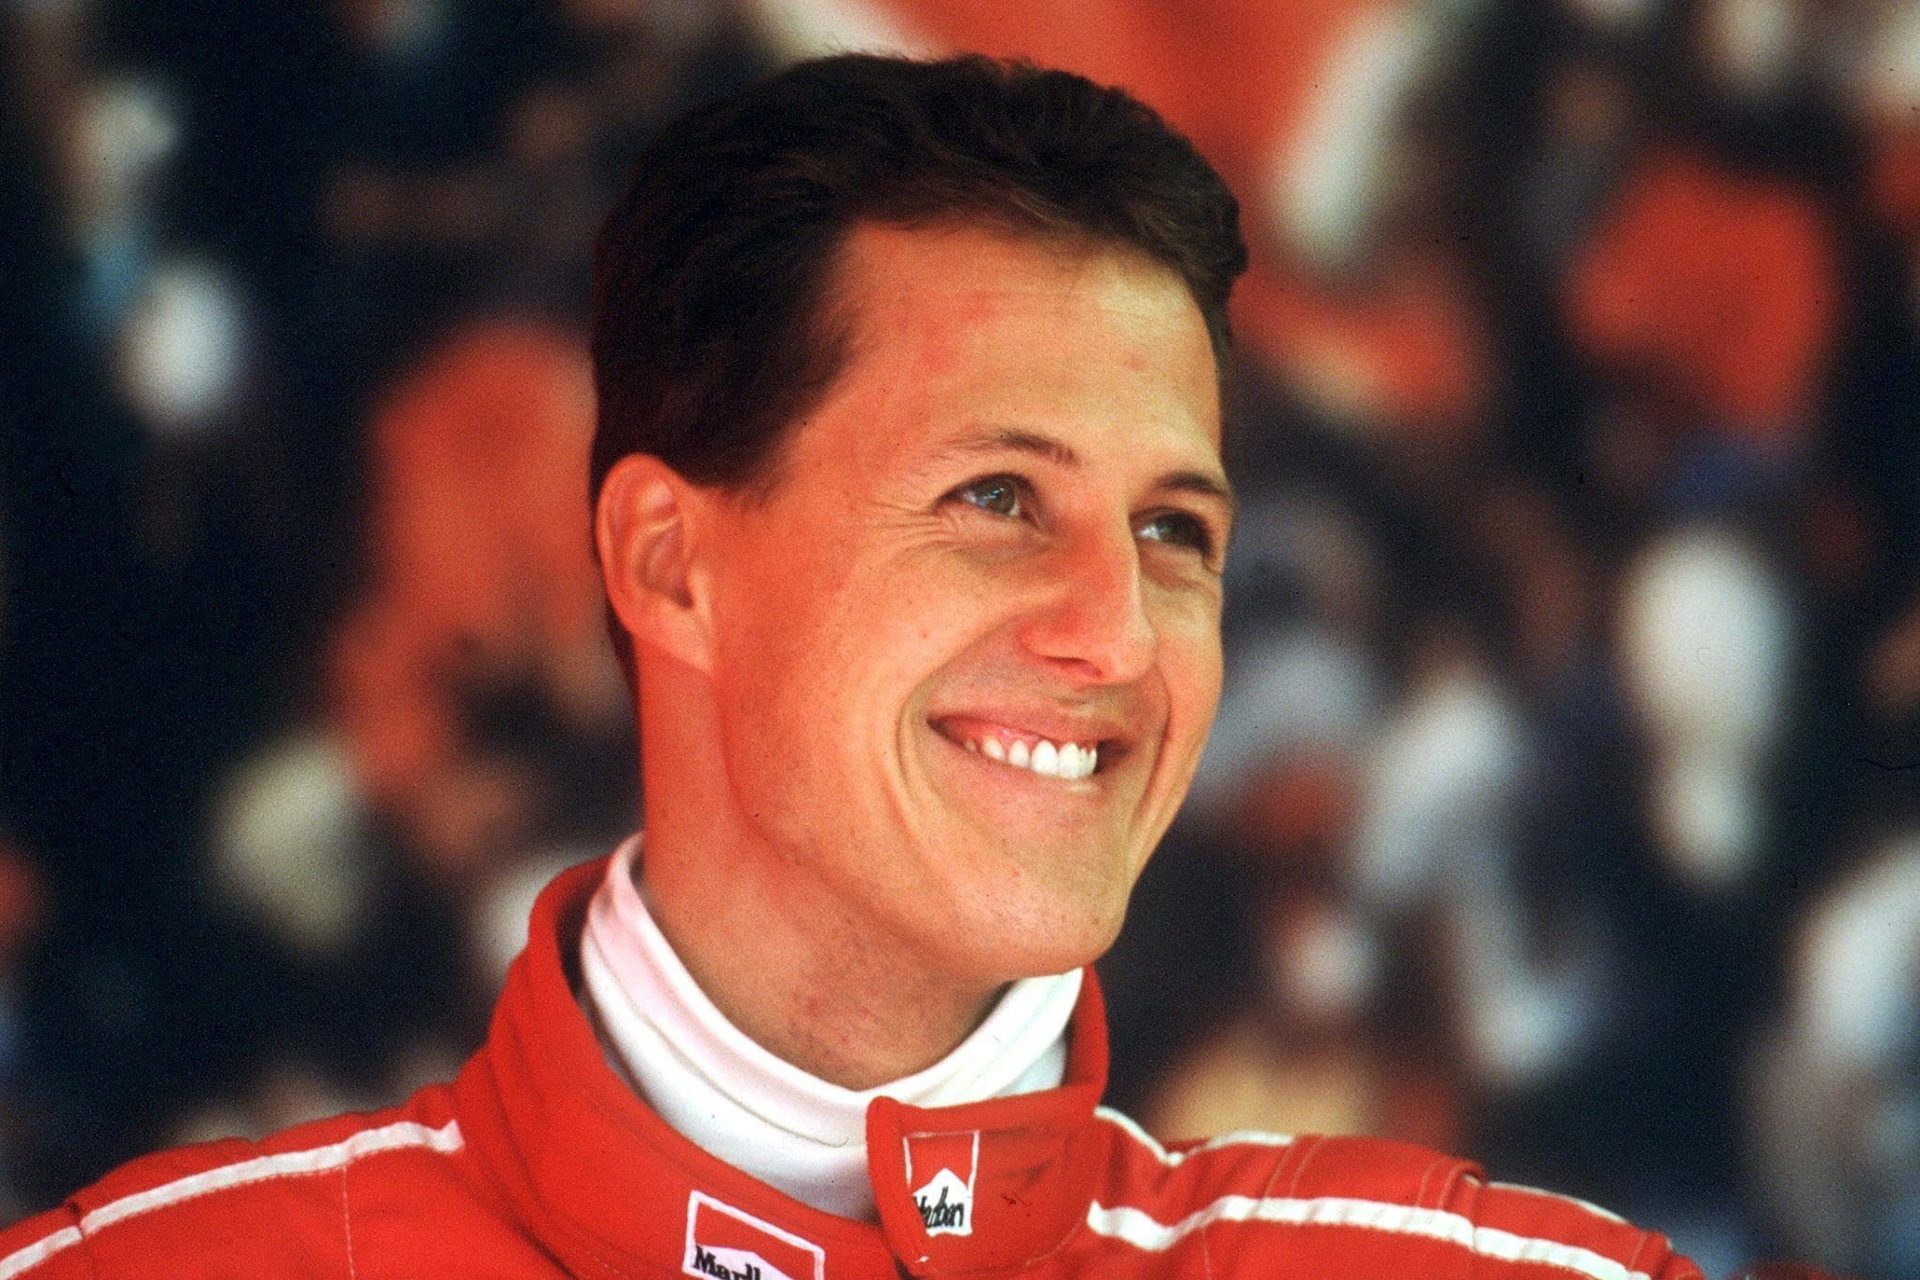 El misterio de Michael Schumacher: todo lo que pasó tras su grave accidente